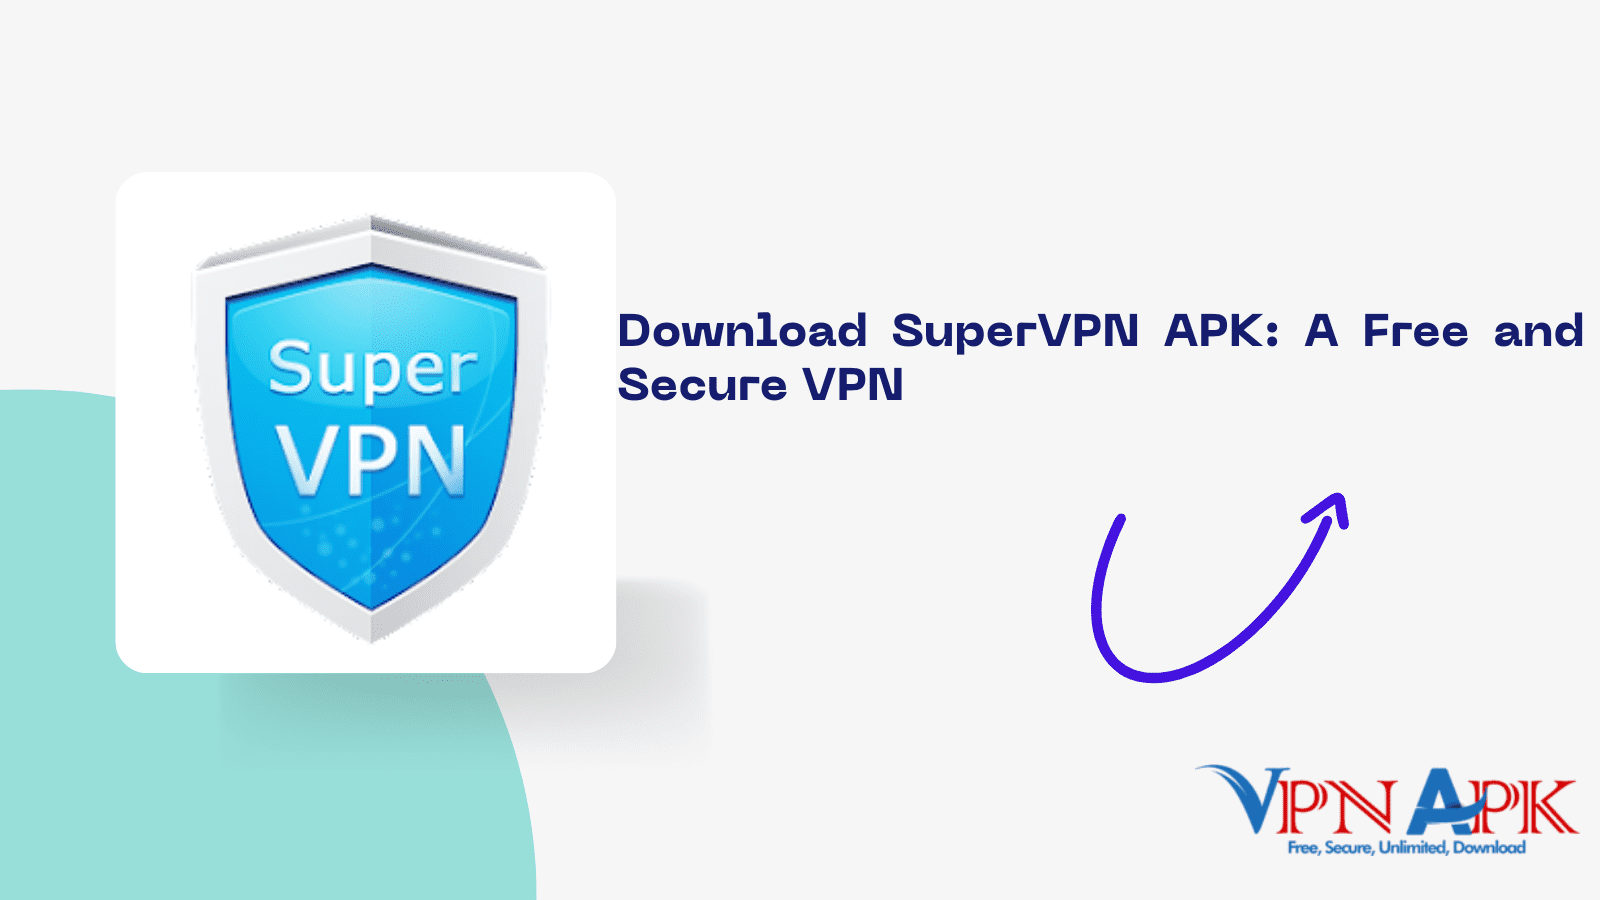 Download SuperVPN APK: A Free and Secure VPN